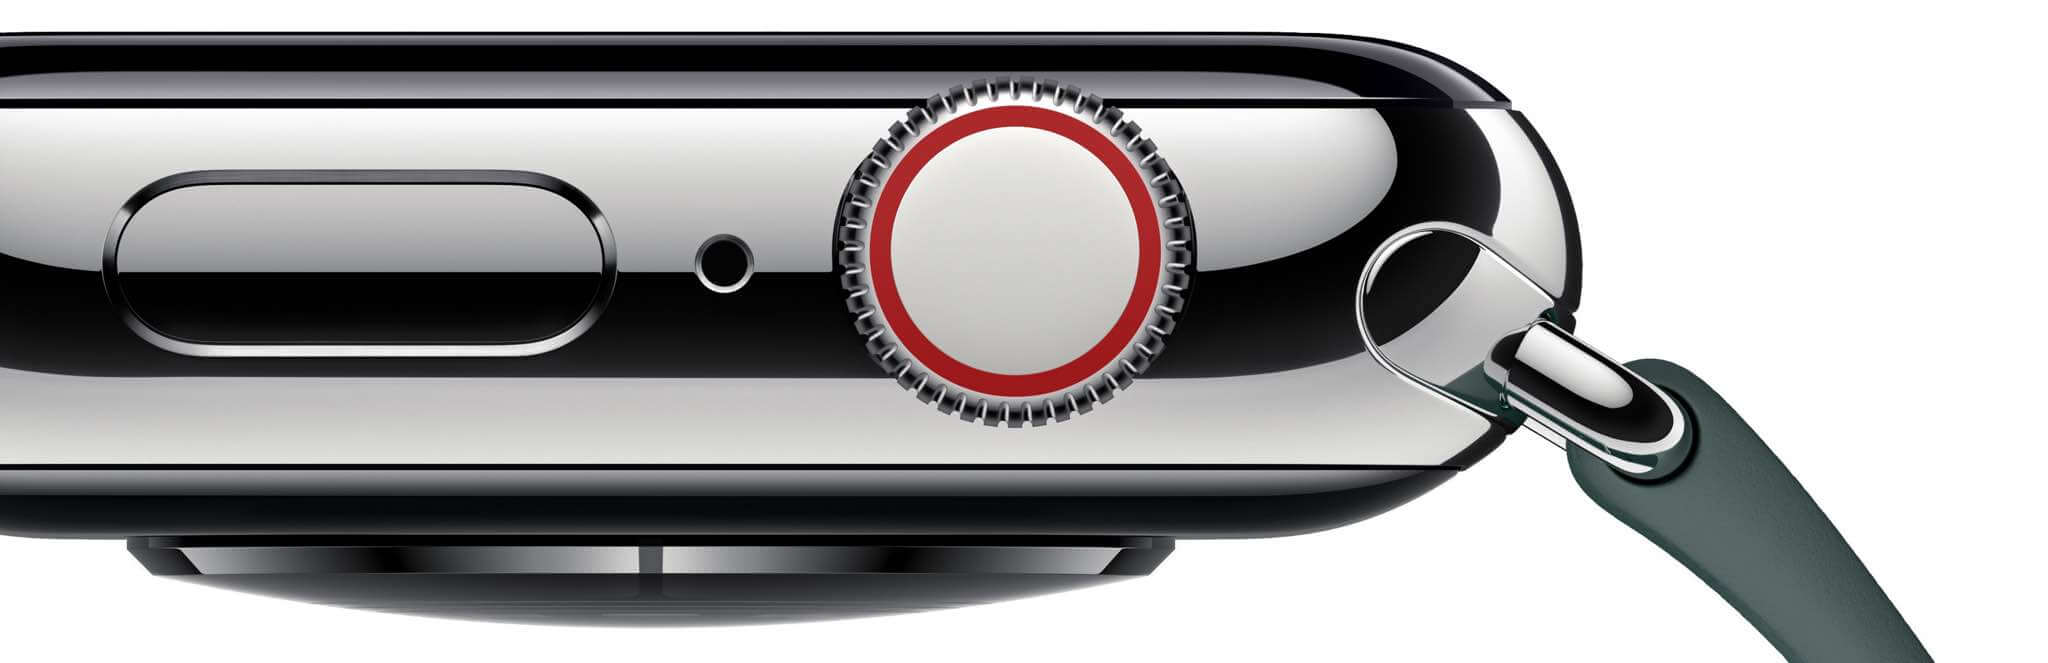 Cómo activar o desactivar el feedback háptico al girar la corona de nuestro Apple Watch